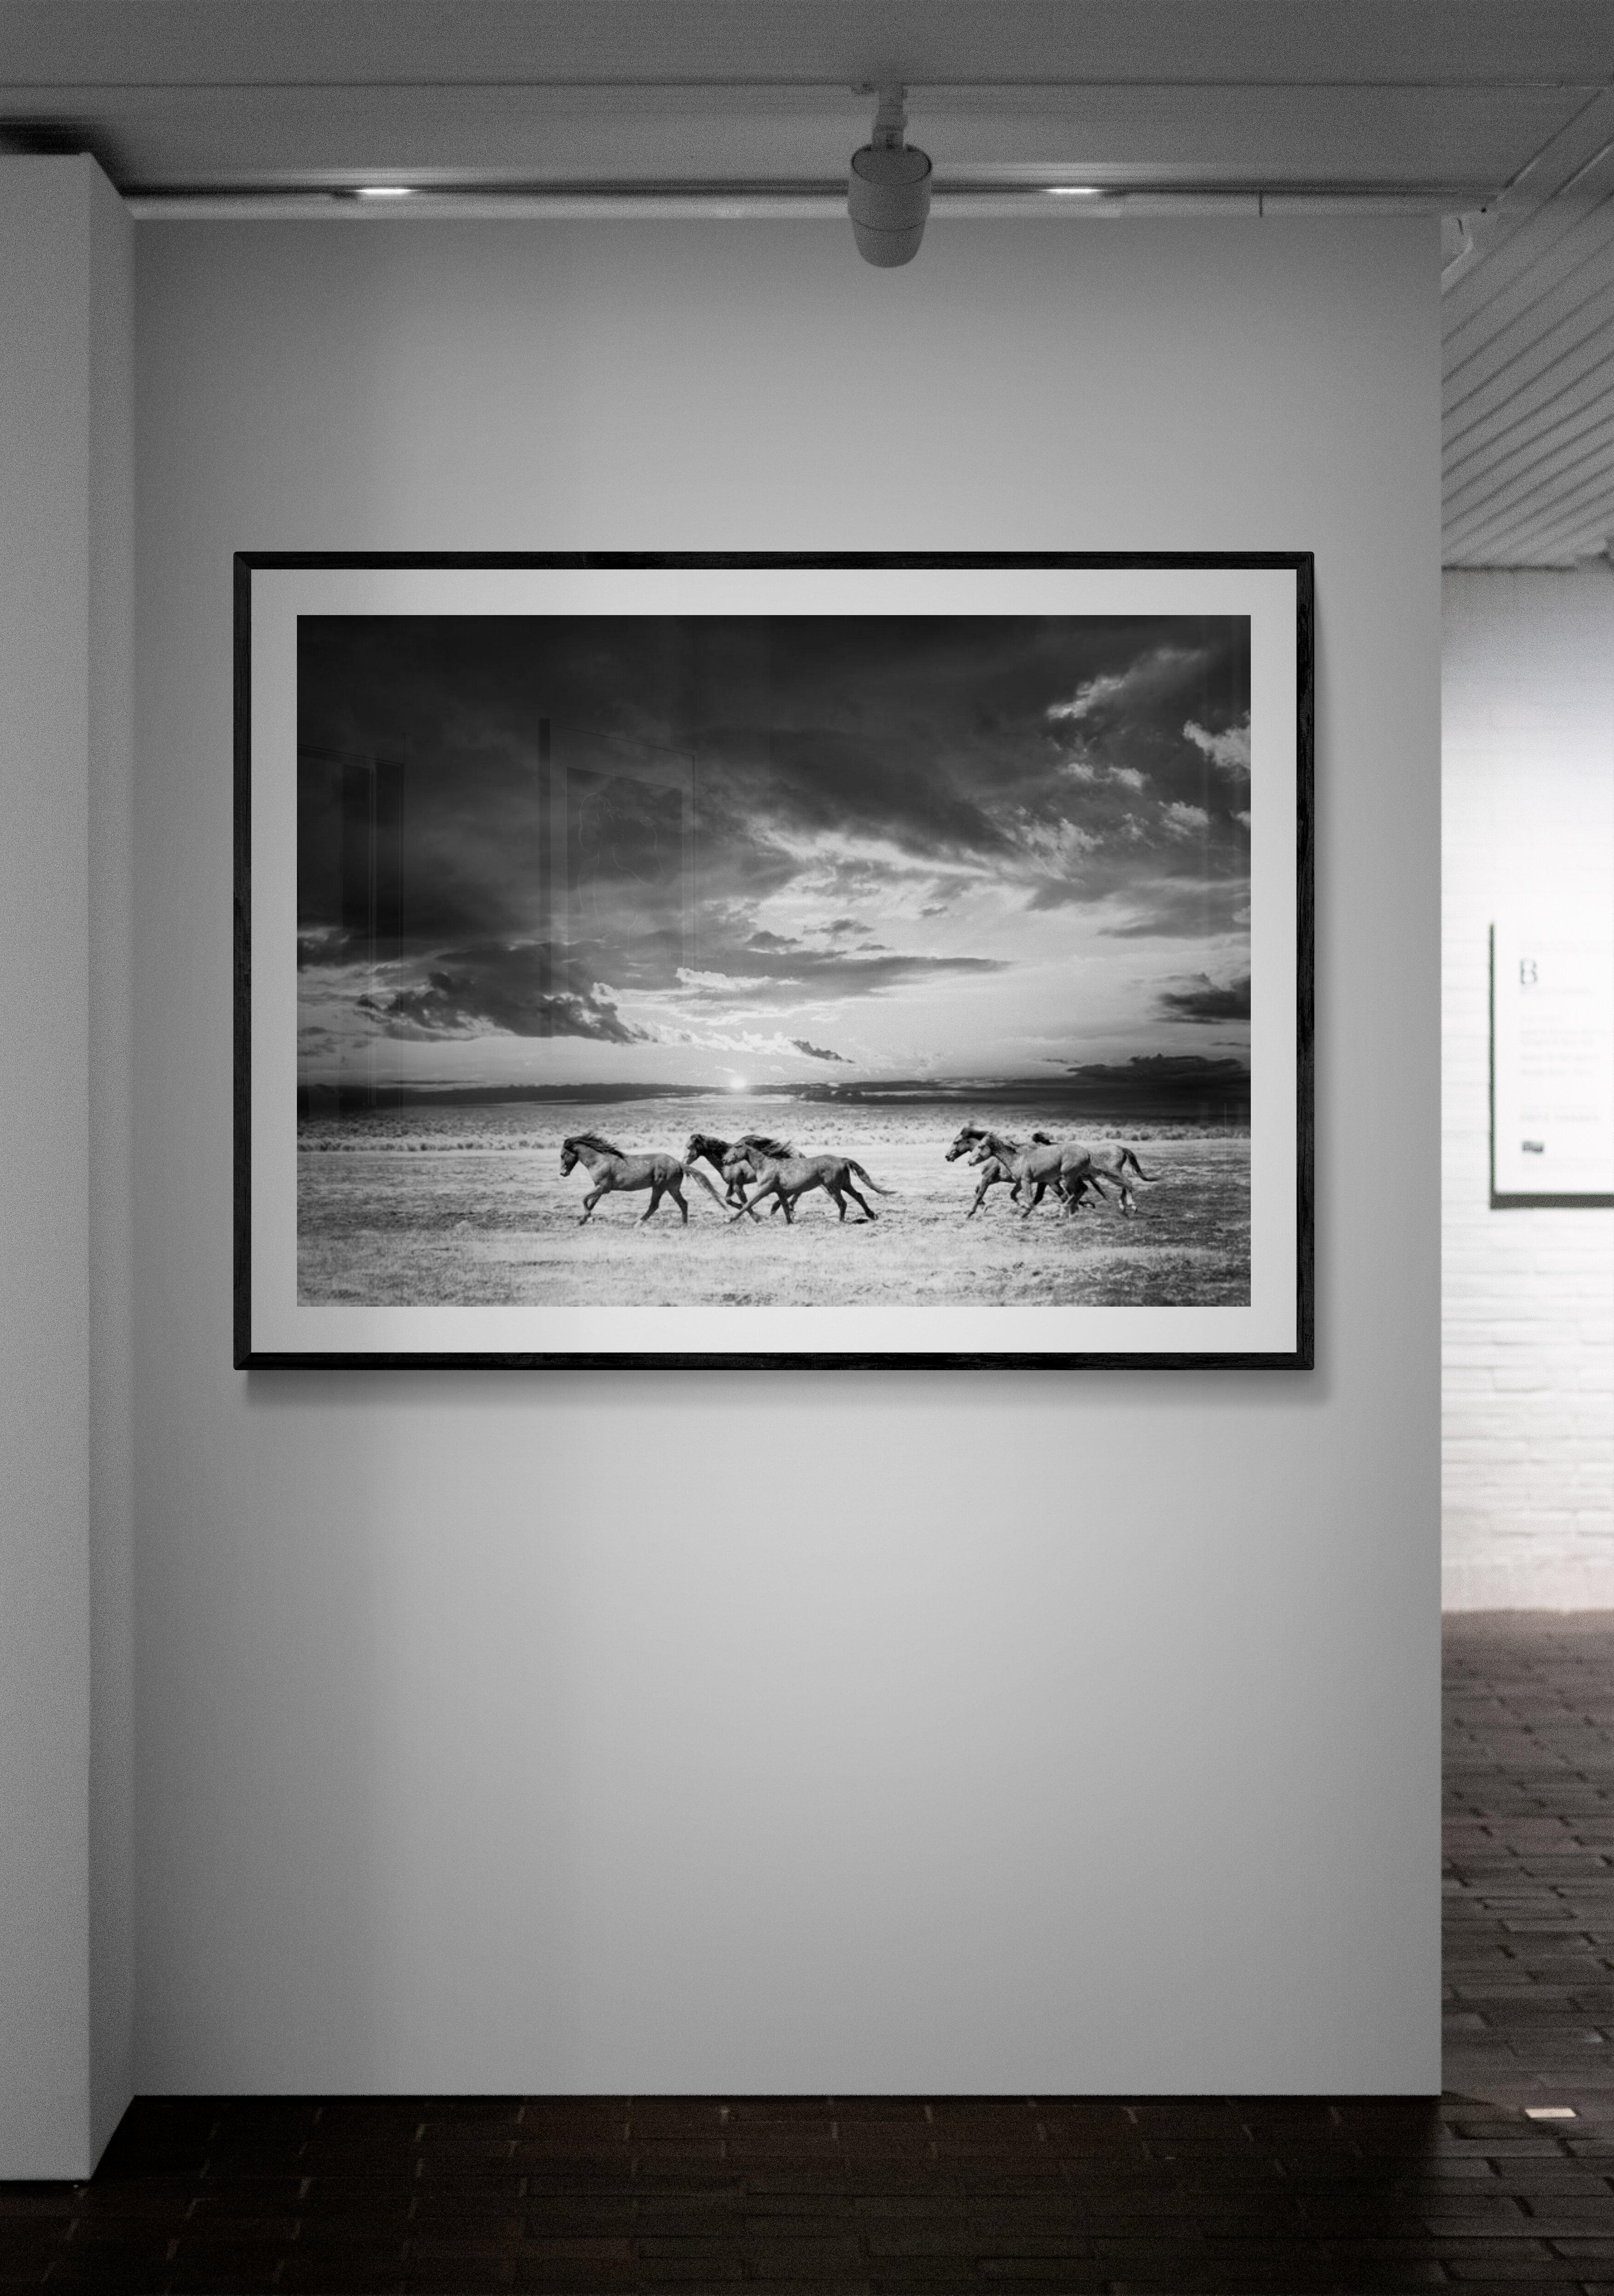 Dies ist eine zeitgenössische Schwarz-Weiß-Fotografie von wilden Mustangs in Nordkalifornien. 
